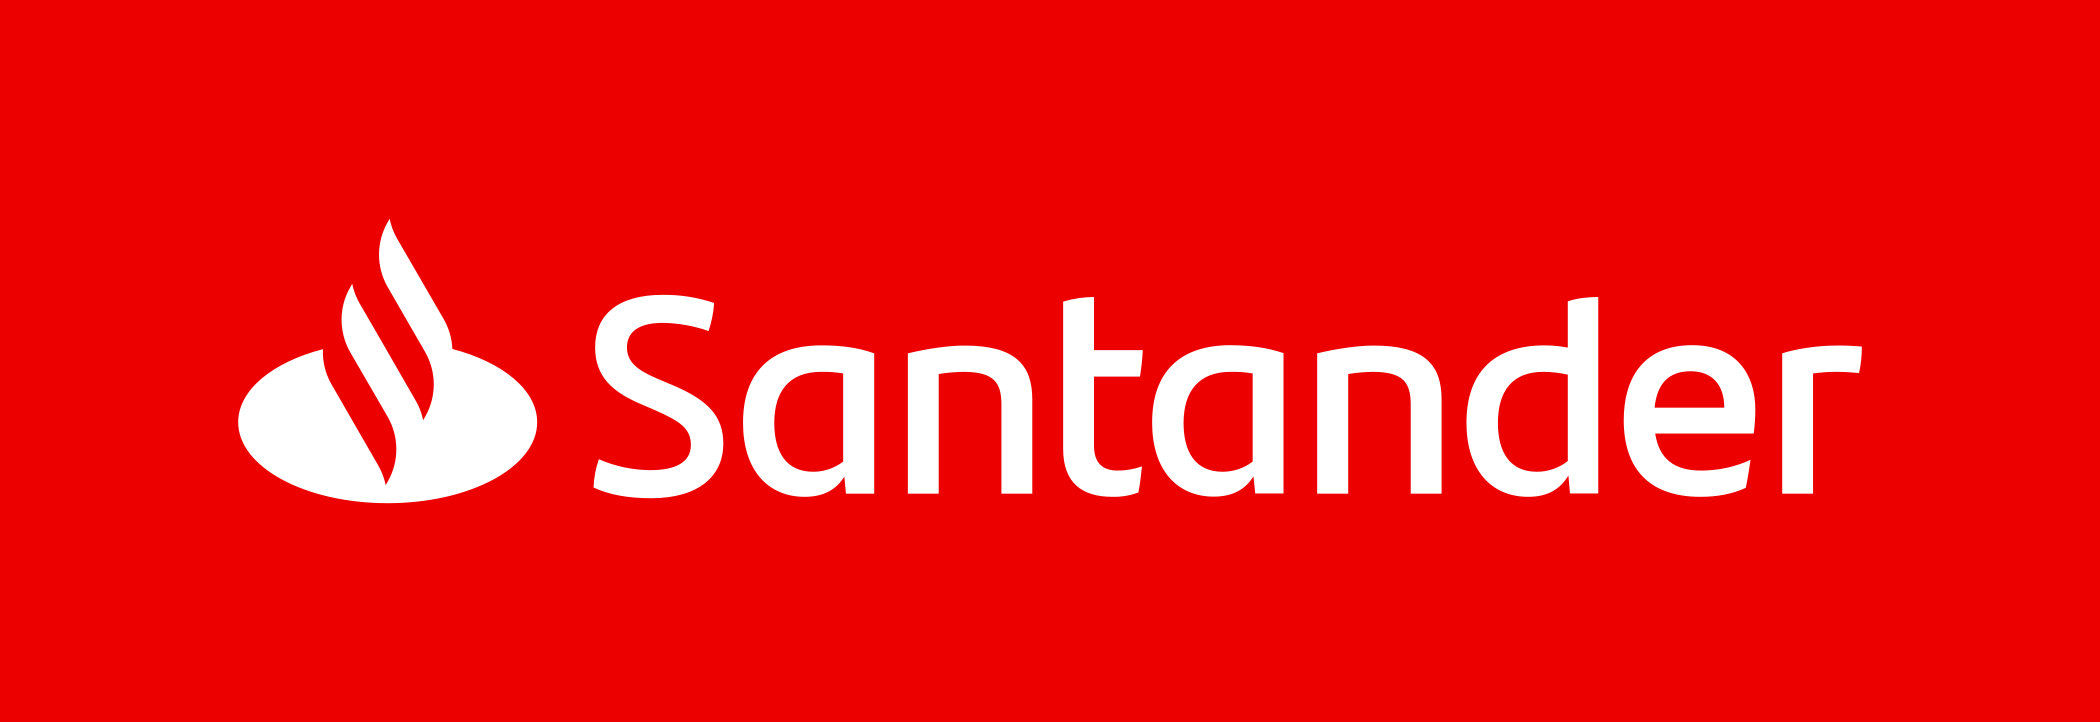 santander logo 3 - Santander Logo